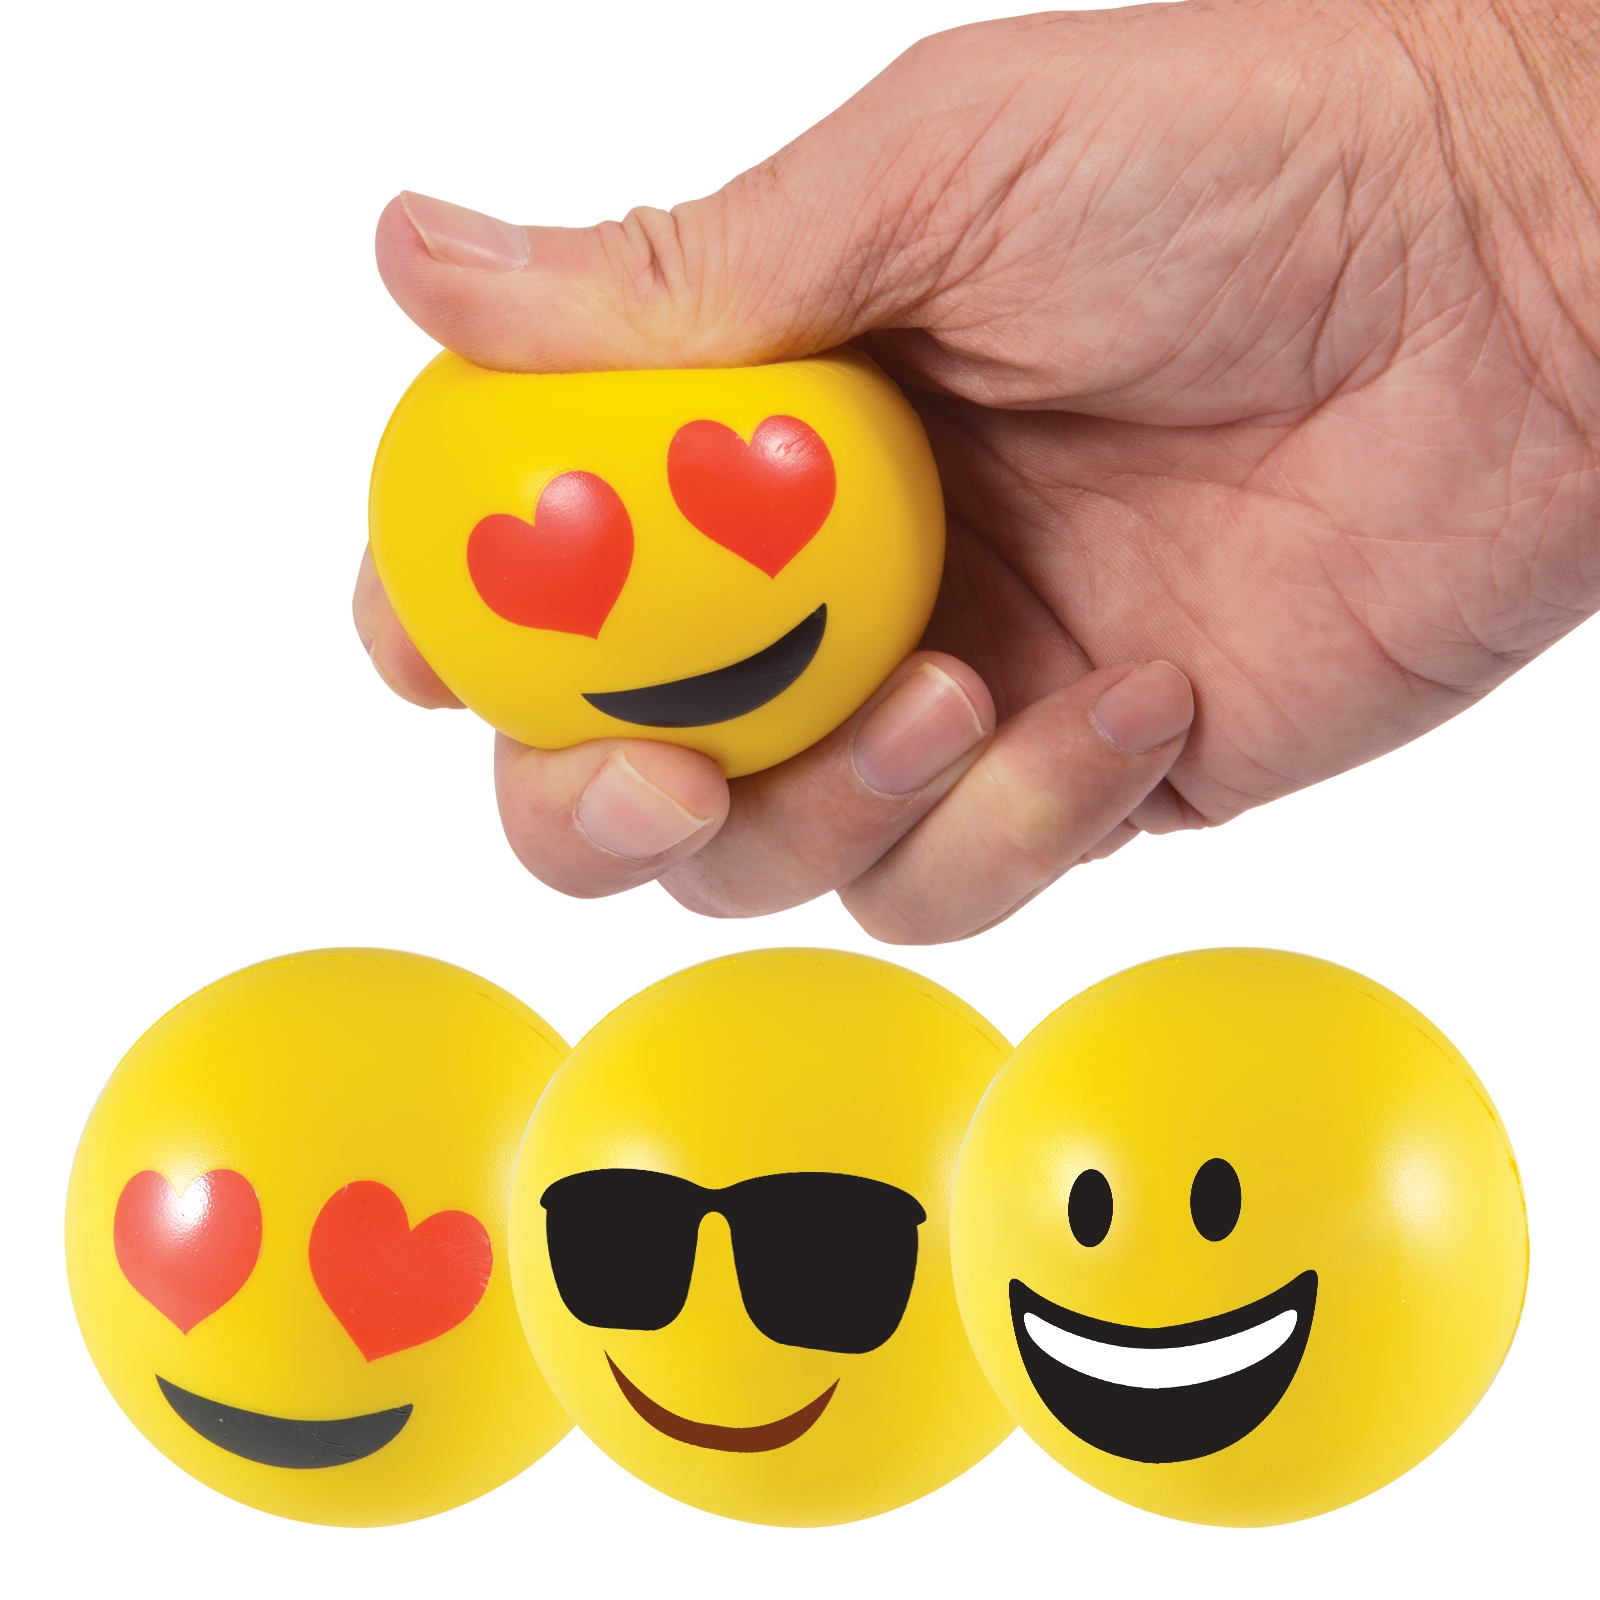 Emoji Stress Balls